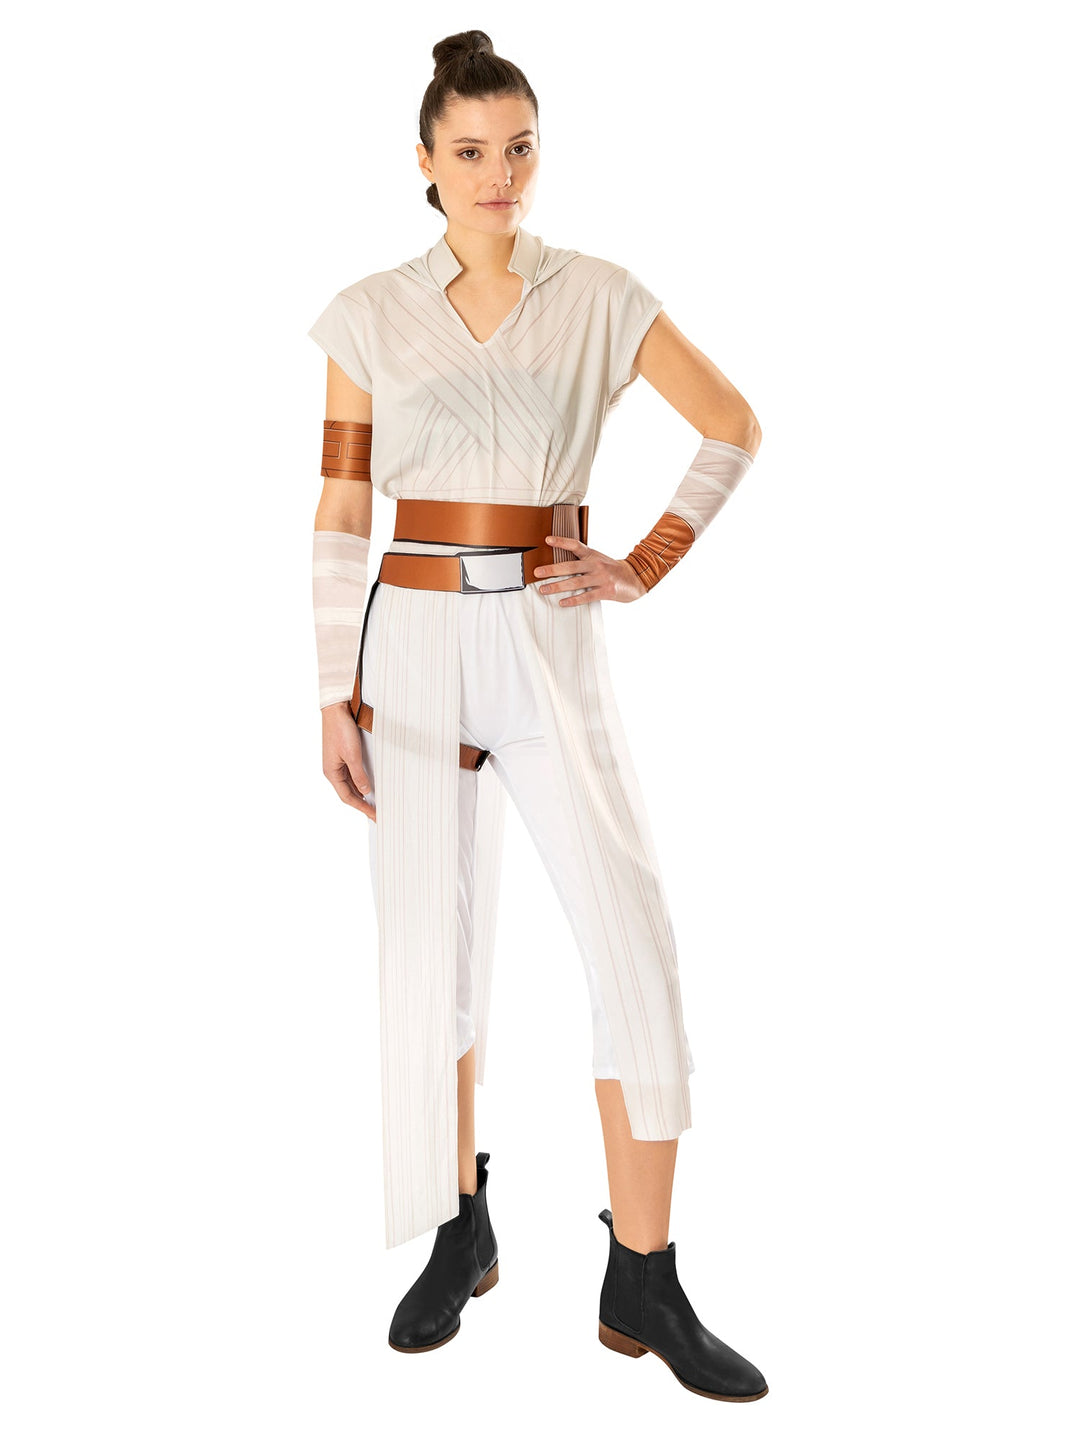 Adult Rey Costume Episode IX Star Wars Rise of Skywalker_1